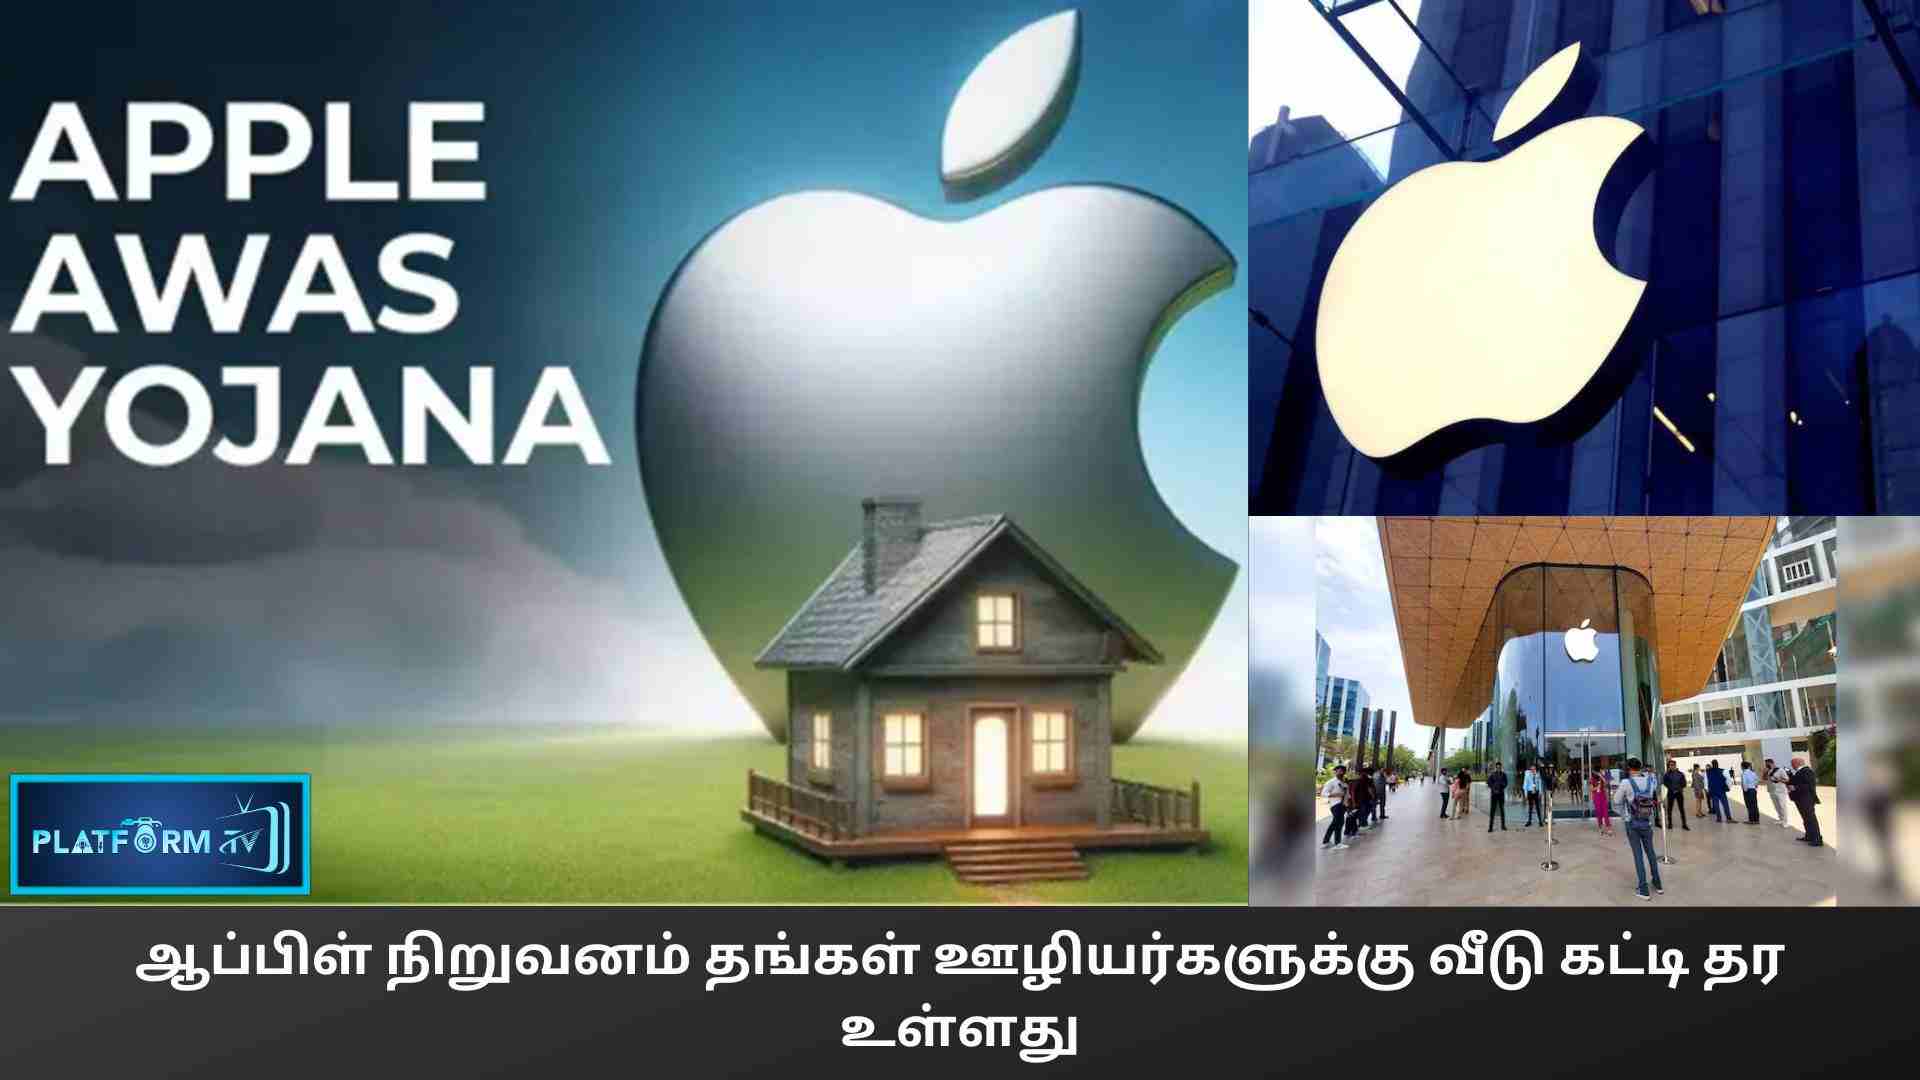 Apple Awas Yojana - Platform Tamil